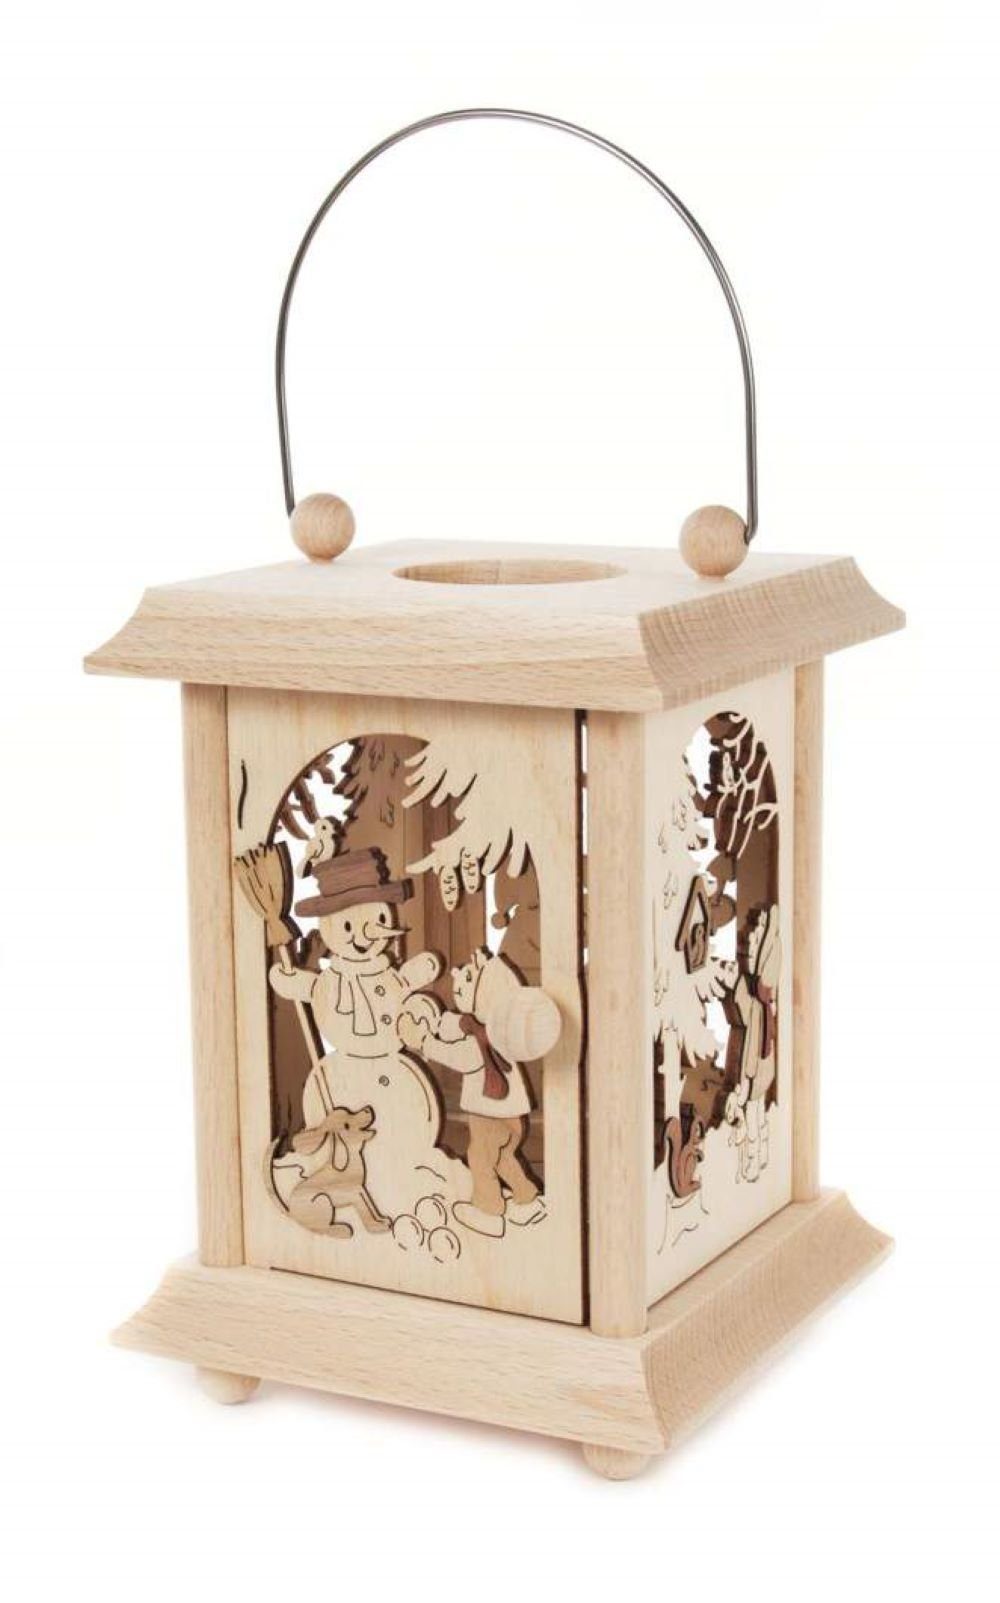 Tischlaterne Kuhnert Handwerkskunst 11,5 dem 17 Winterkinder, Erzgebirge Holz aus x Motiv cm, Kerzenhalter 11,5 aus x